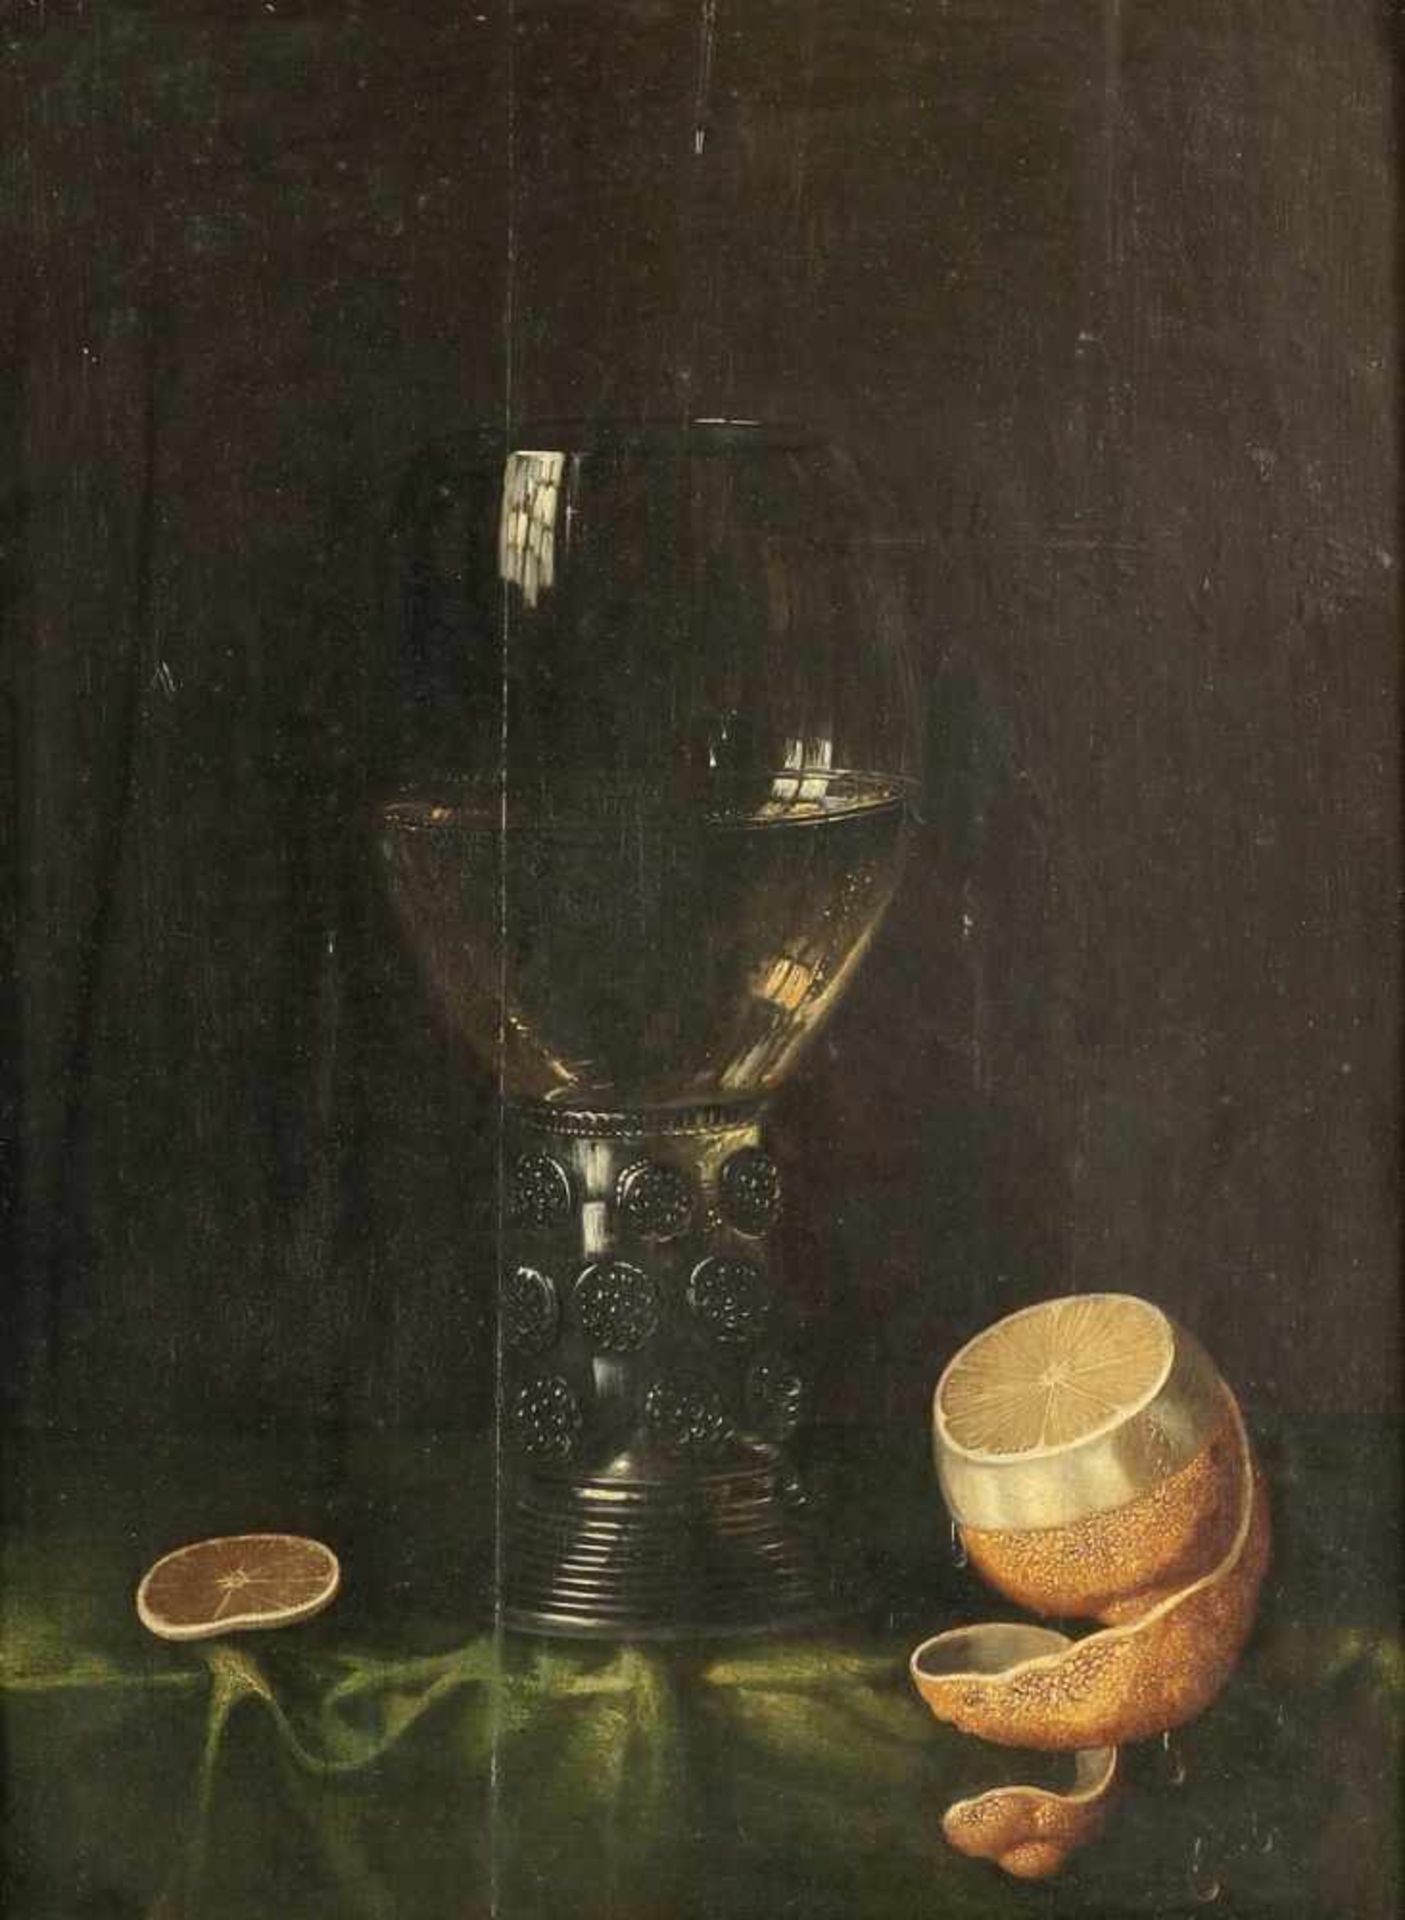 Künstler des 17. Jahrhunderts - Stillleben mit Römer und Zitrone - Öl/Holz. 42 x 31,5 cm. Rahmen. Es